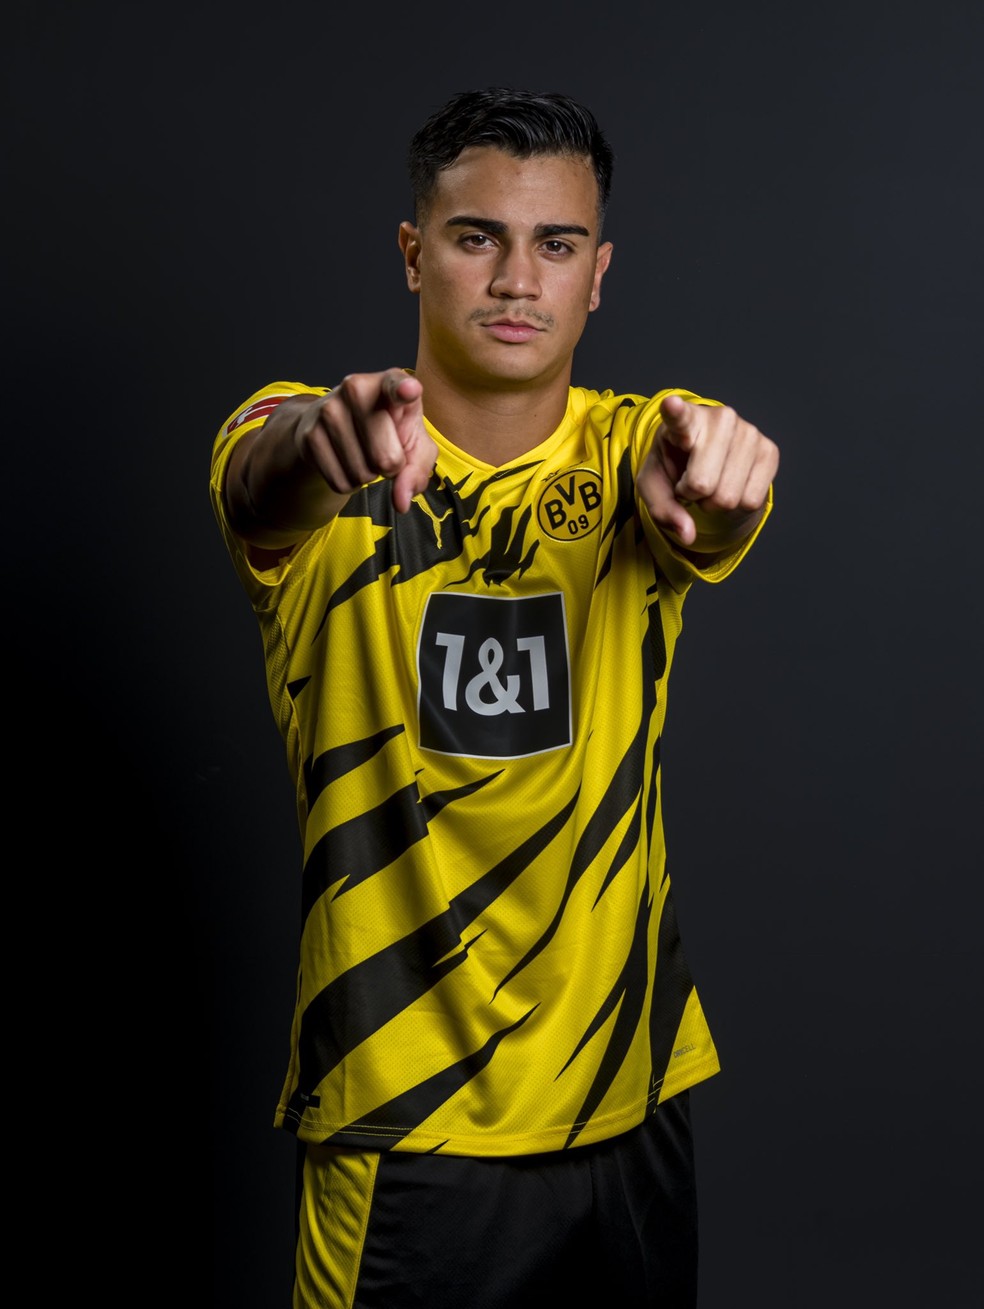 Reinier com a camisa do Borussia Dortmund — Foto: Reprodução de Twitter